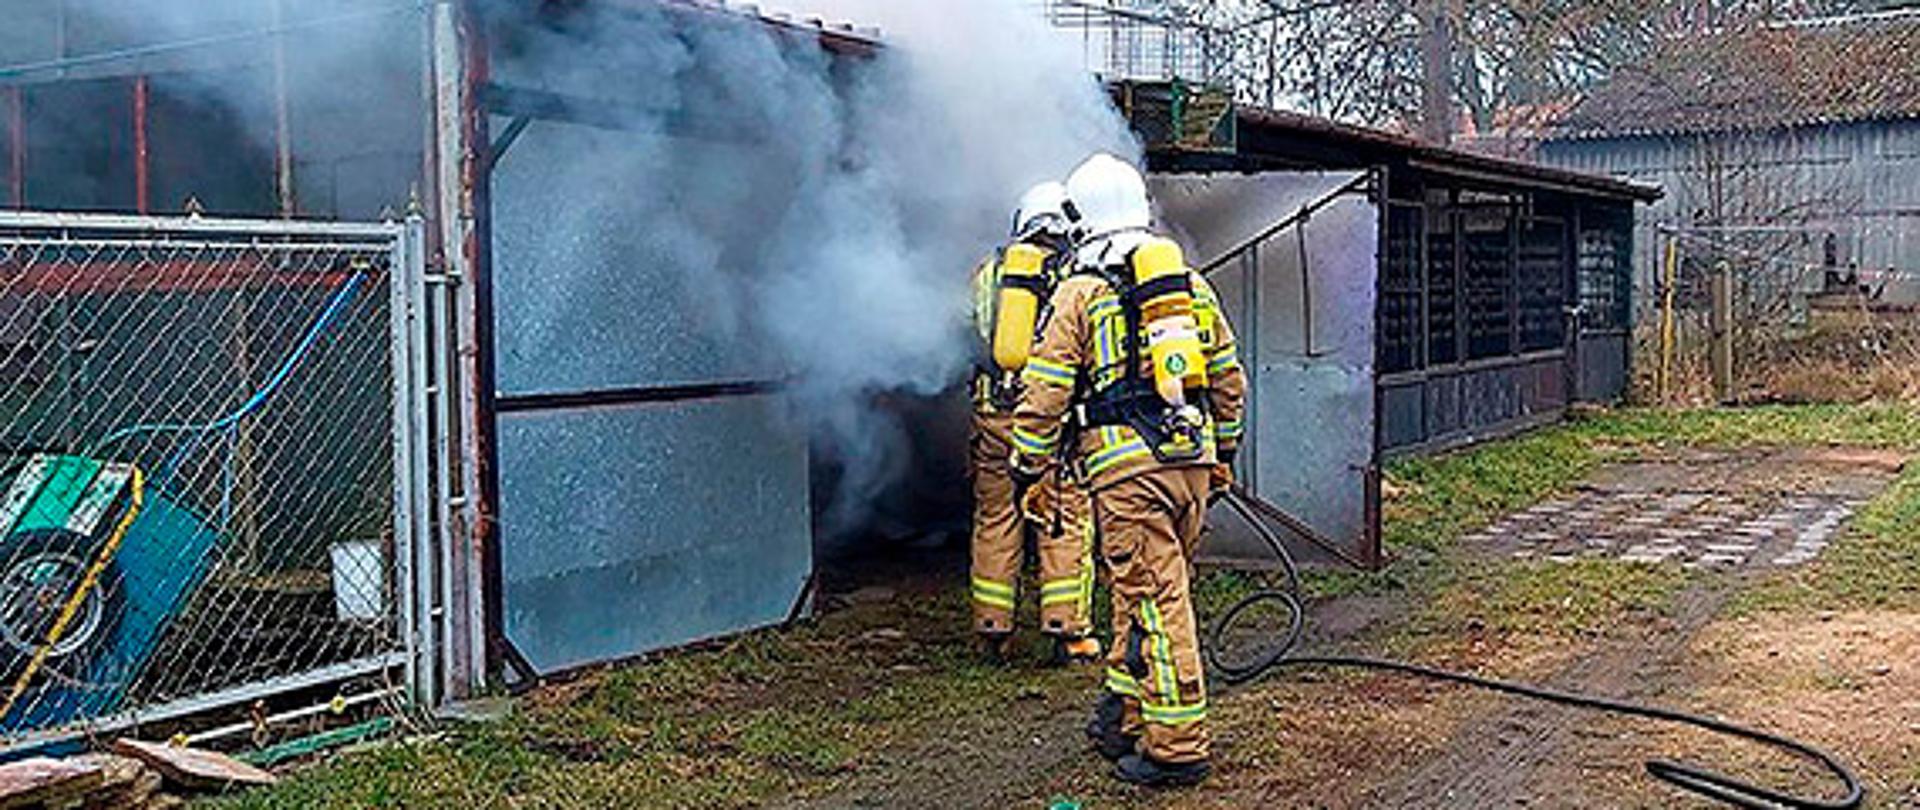 Zdjęcie przedstawia dwóch strażaków ubranych w aparaty powietrzne którzy wchodzą z linią gaśniczą do blaszanego garażu z którego wydobywa się dym.